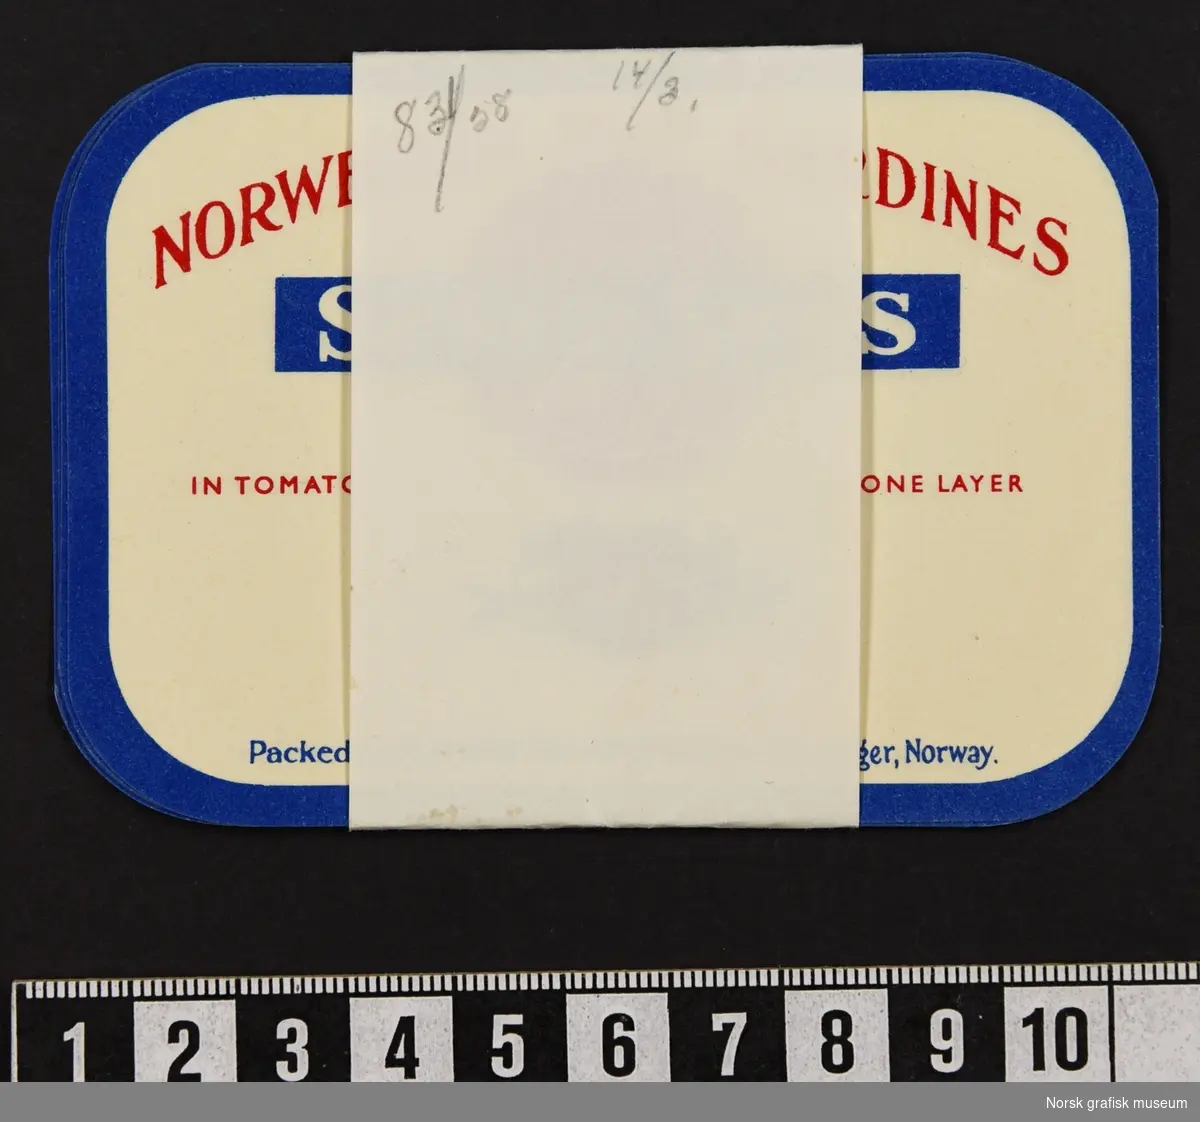 En bunke etiketter holdt sammen av et papirbånd. 

Etikettene har hvit farge, blå ramme og detaljer og tekst i rødt. Under varebeskrivelsen er en illustrasjon av en fisk og en tomat.